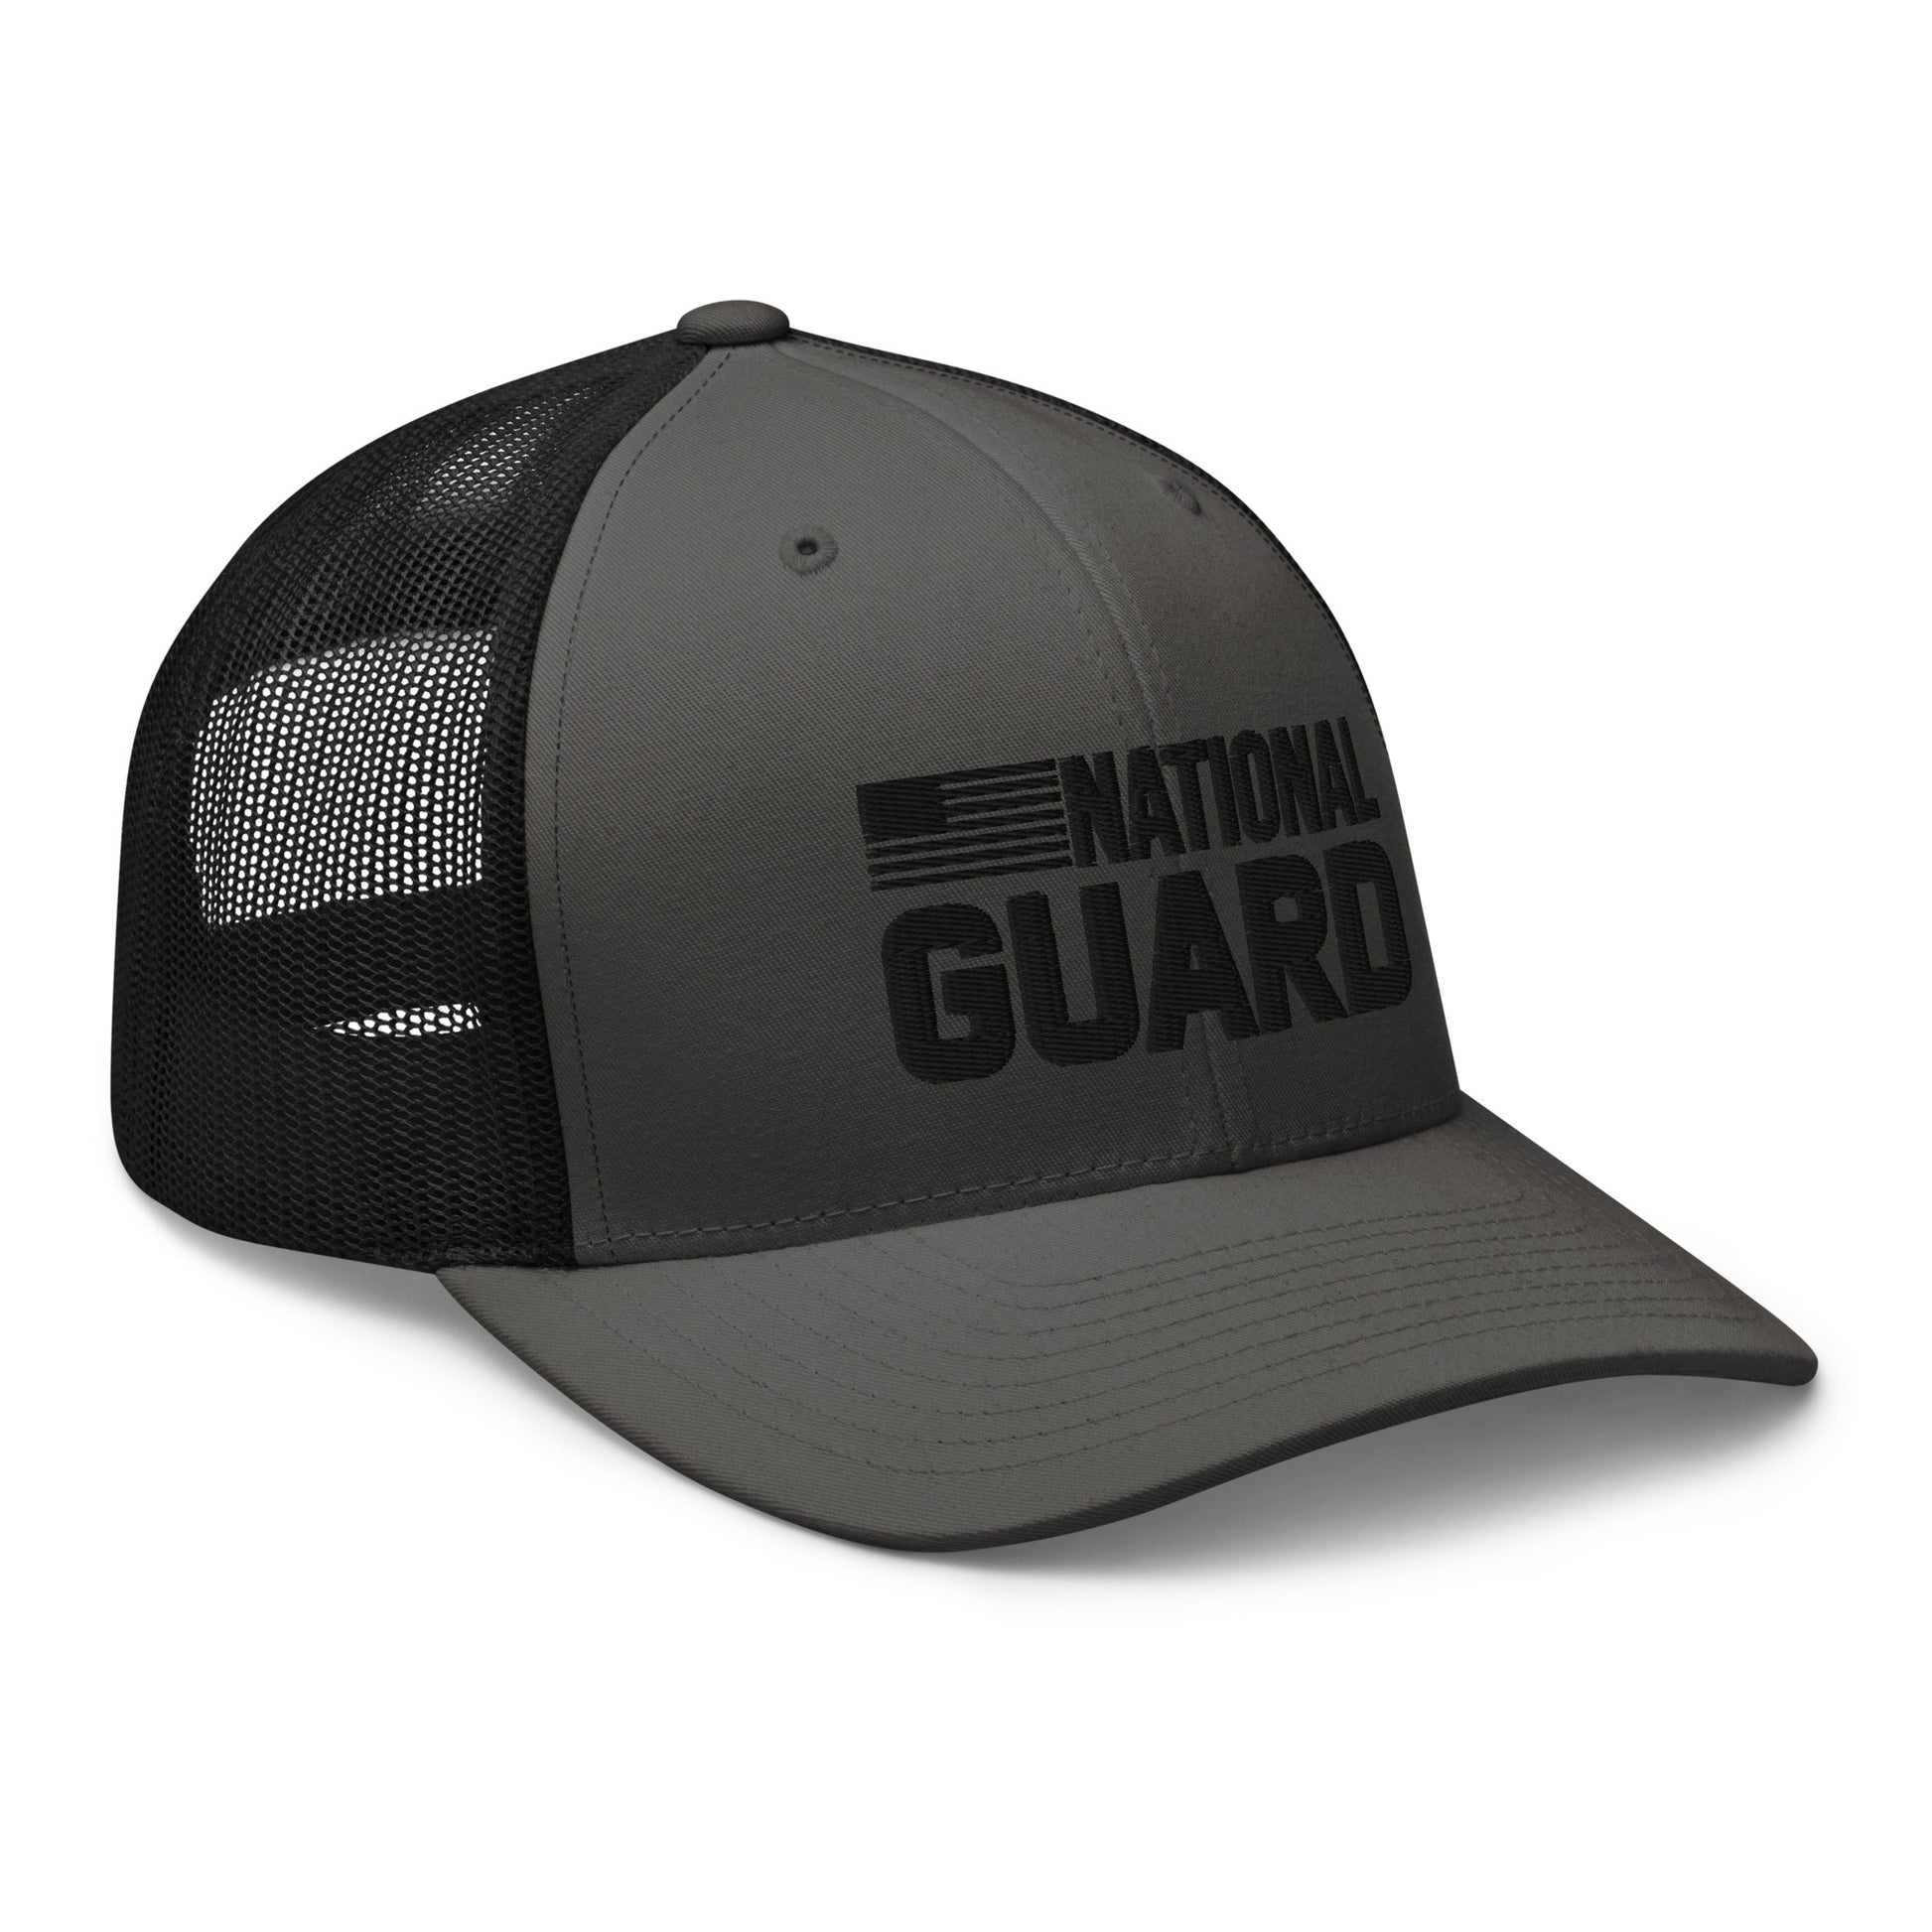 Trucker Cap - National Guard - FAFO Sportswear